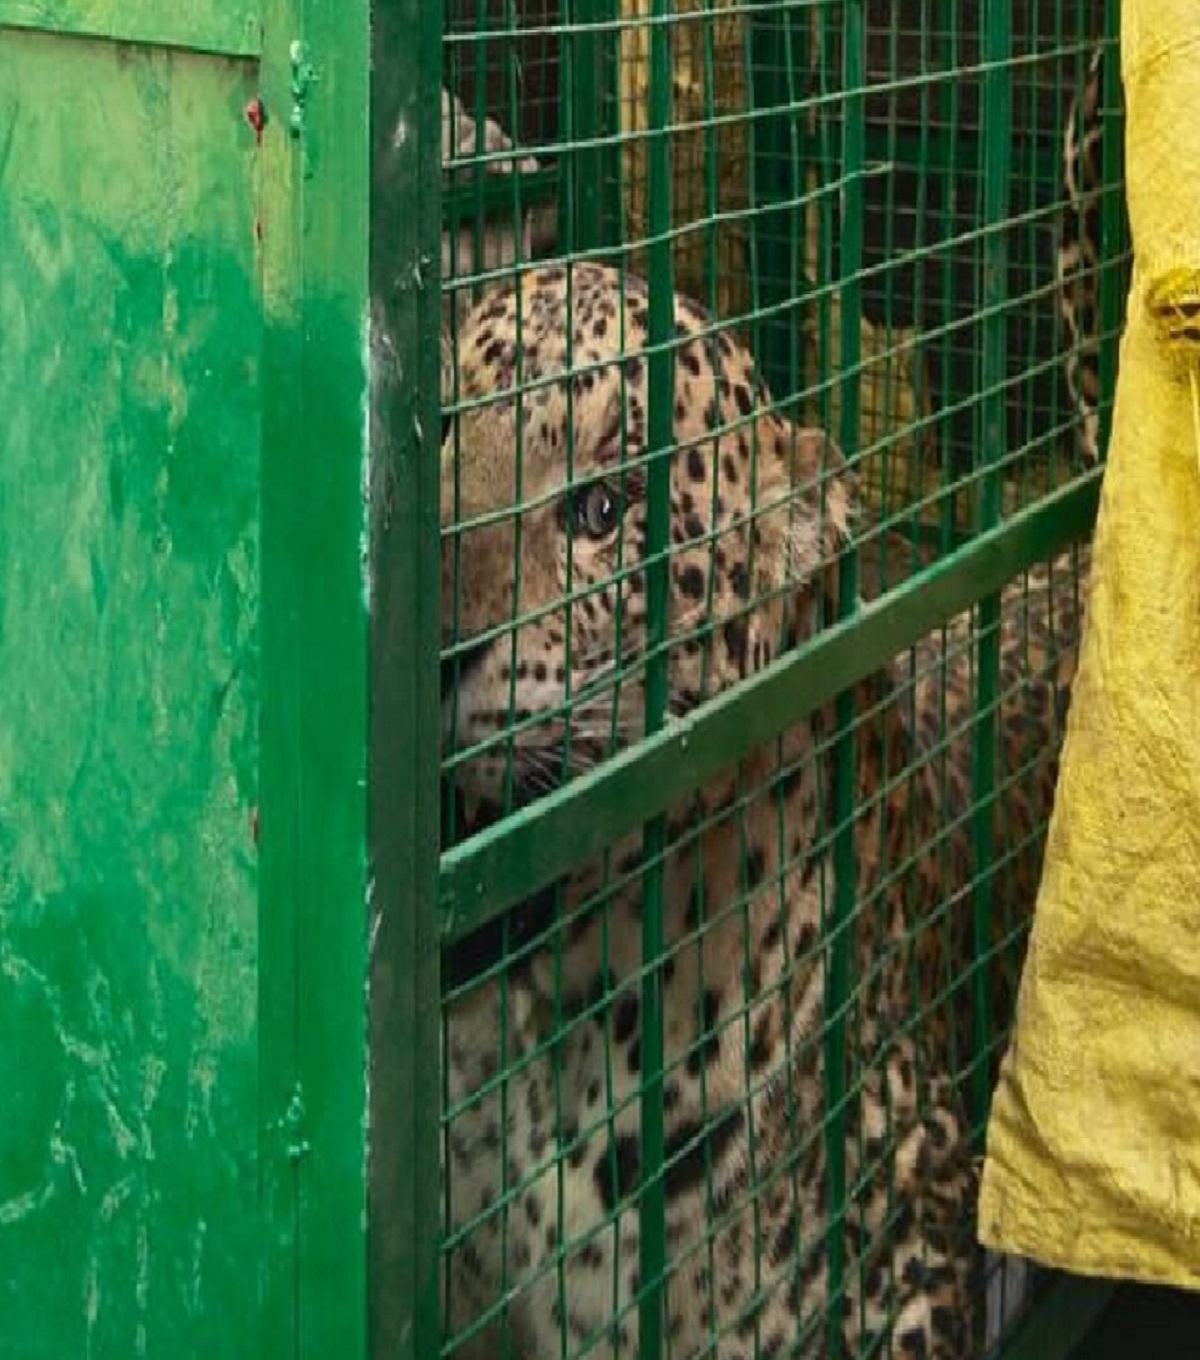 Panther Movement : पैंथर हुआ पिंजरे में कैद, वन विभाग की टीम ले गई साथ, लोगों ने
ली राहत की सांस